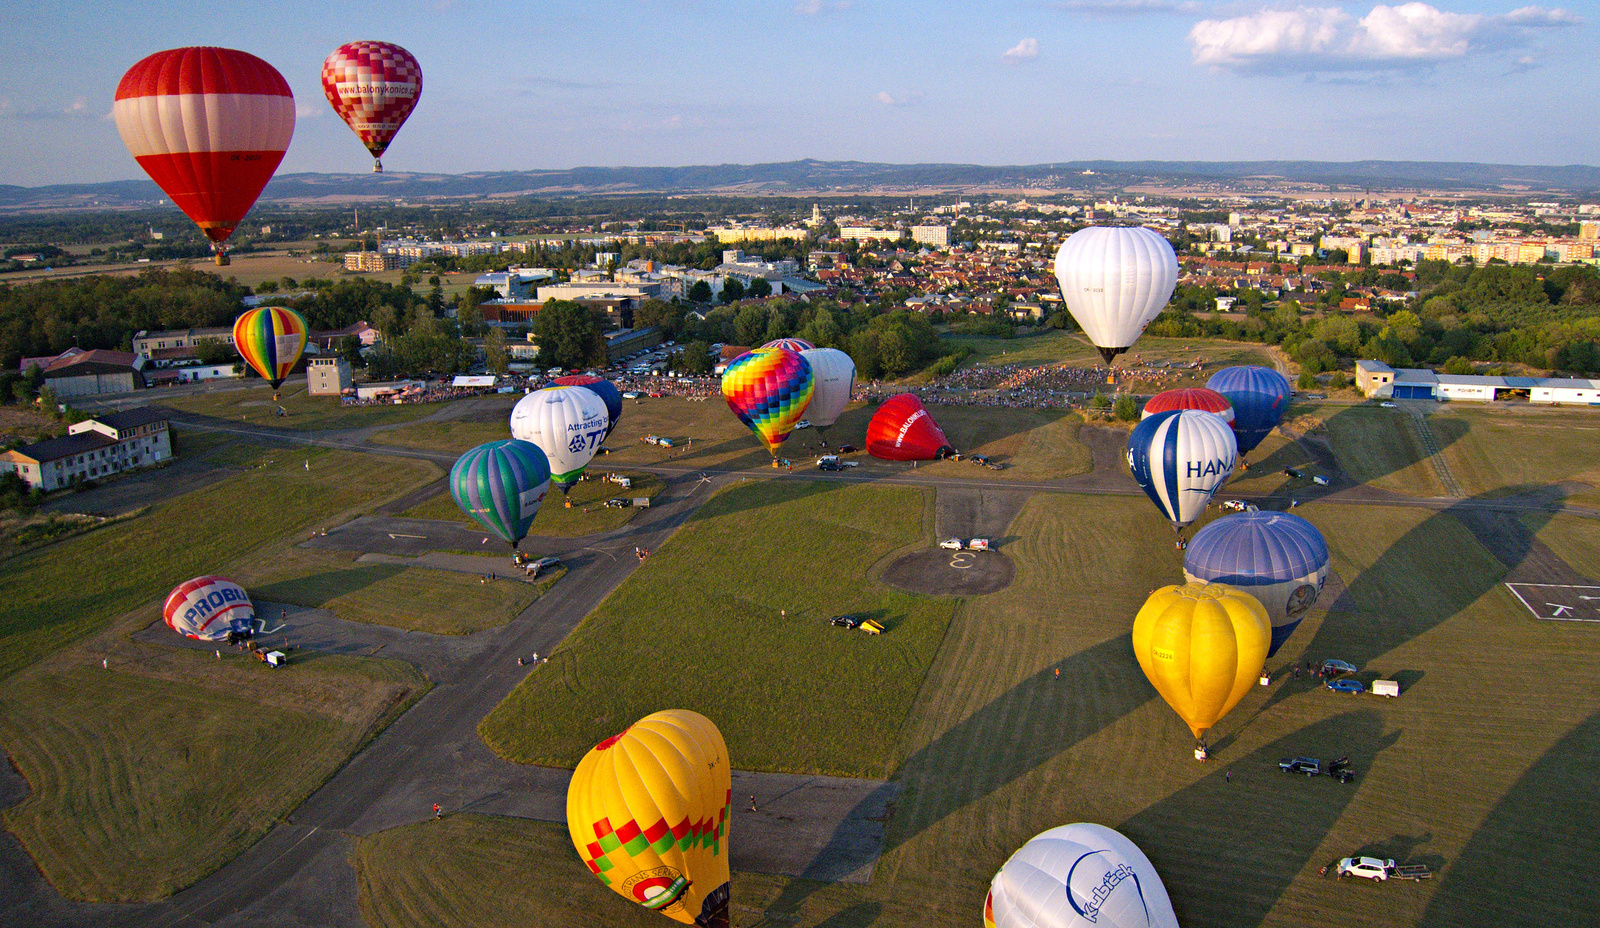 Nad Olomouc se vzneslo hejno balonů. Podívejte se na barevnou show -  Olomoucký deník